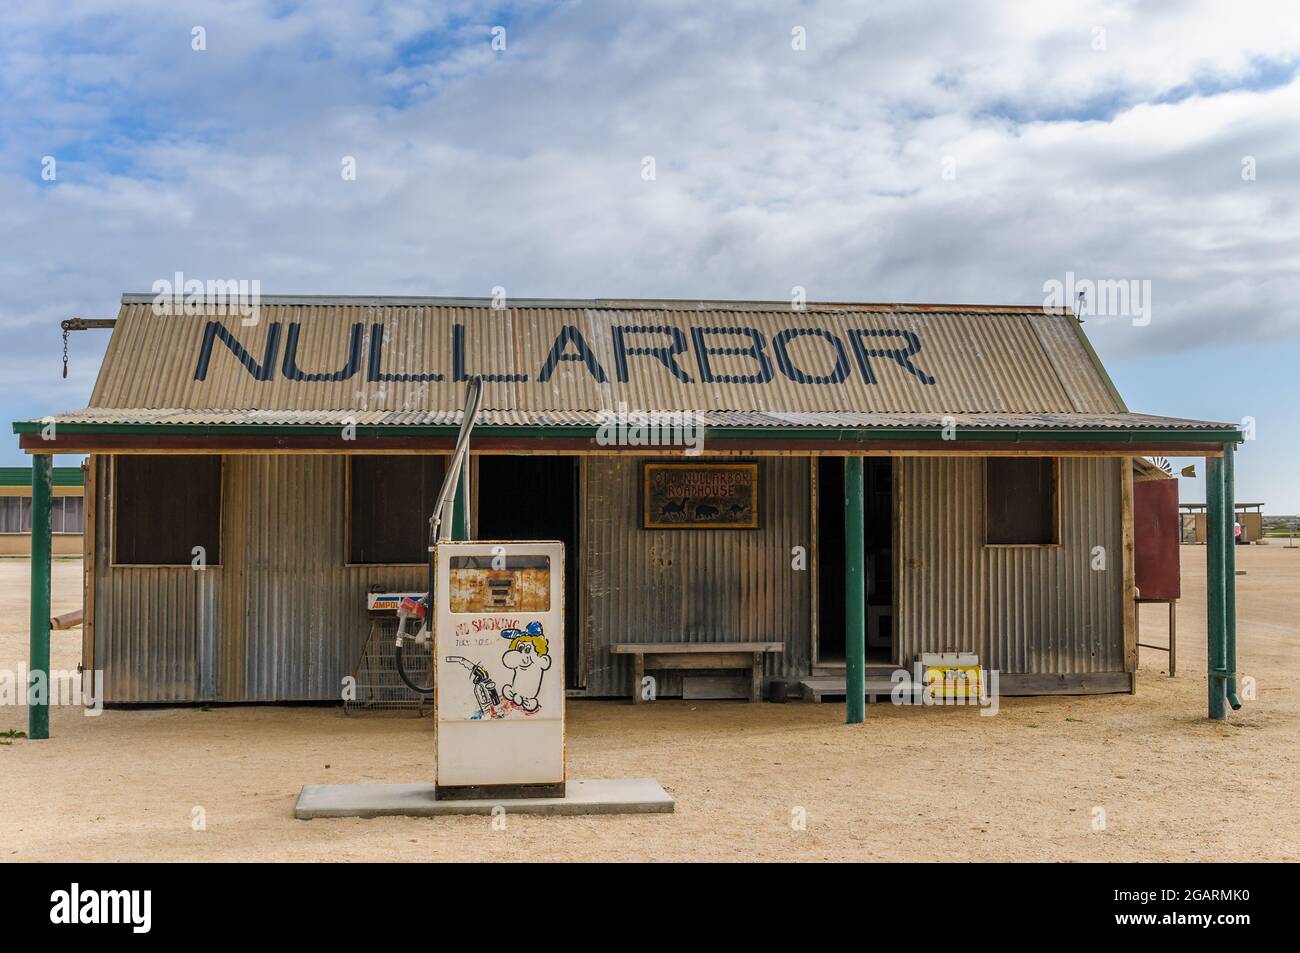 Restaurierte historische Reliquie der Nullarbor Roadhouse Tankstelle am Eyre Highway, South Australia nahe der Grenze zu Westaustralien. Stockfoto